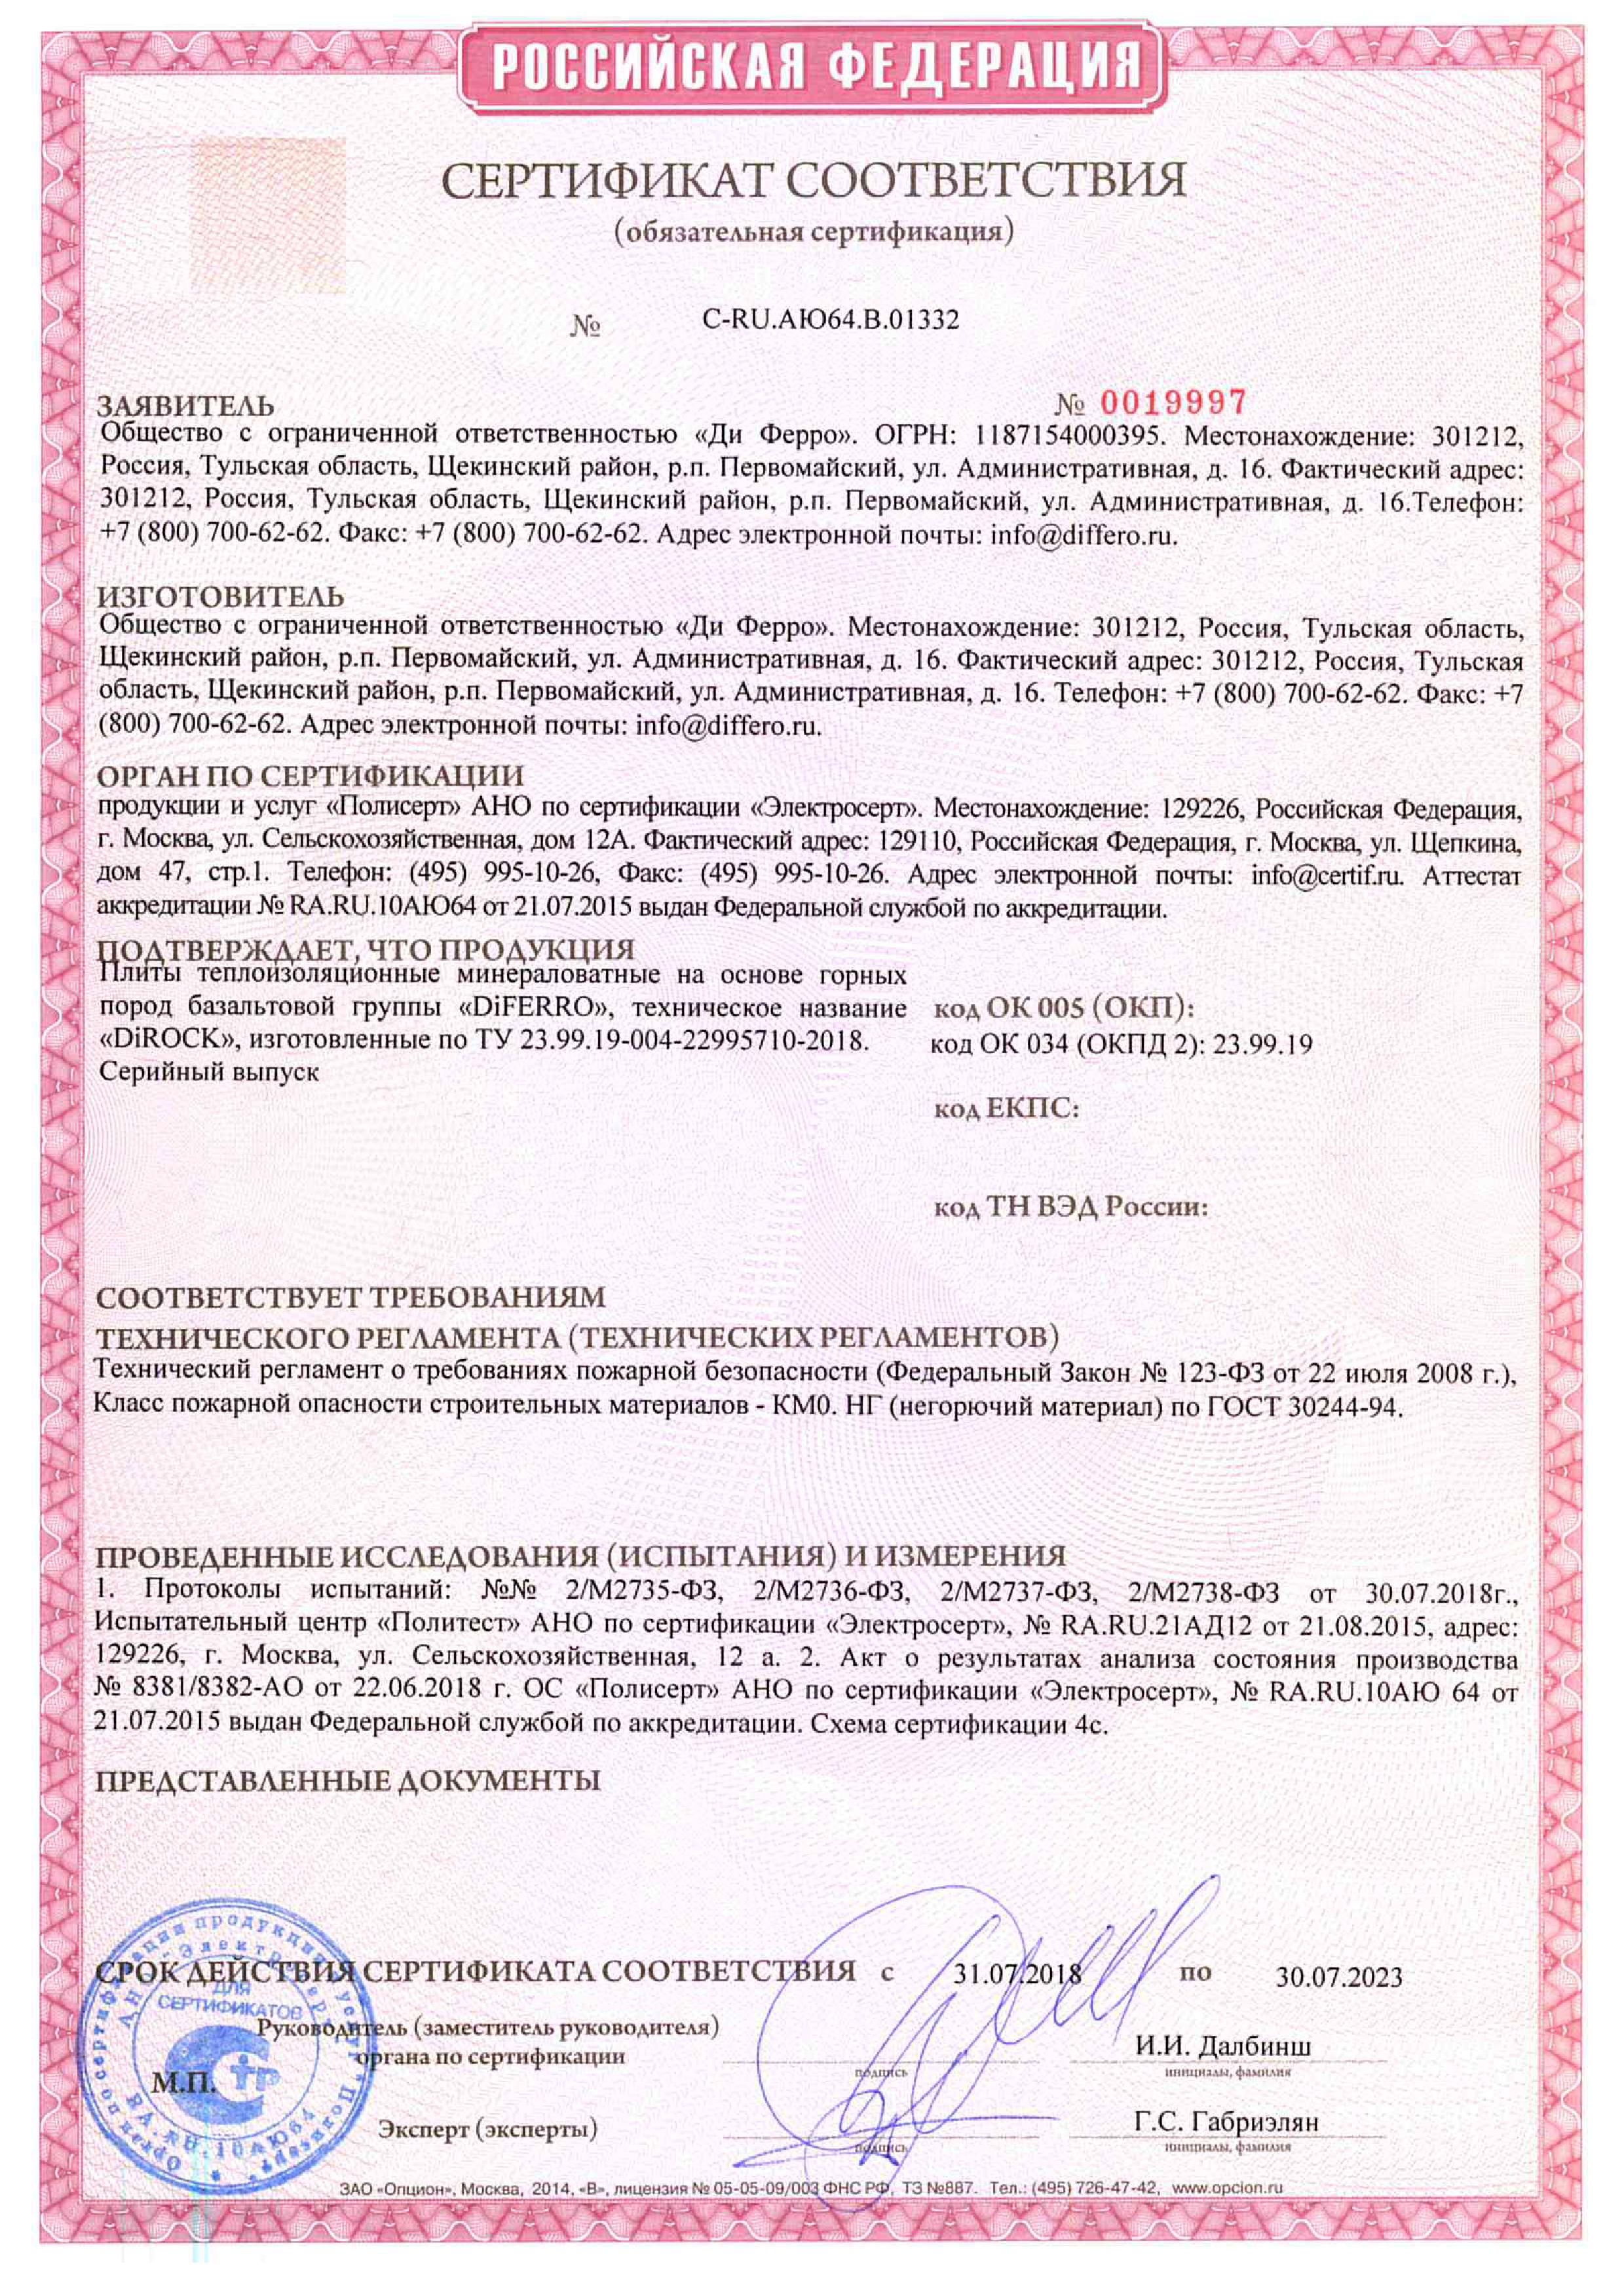 Сертификат соответствия пожарной безопасности Дирок